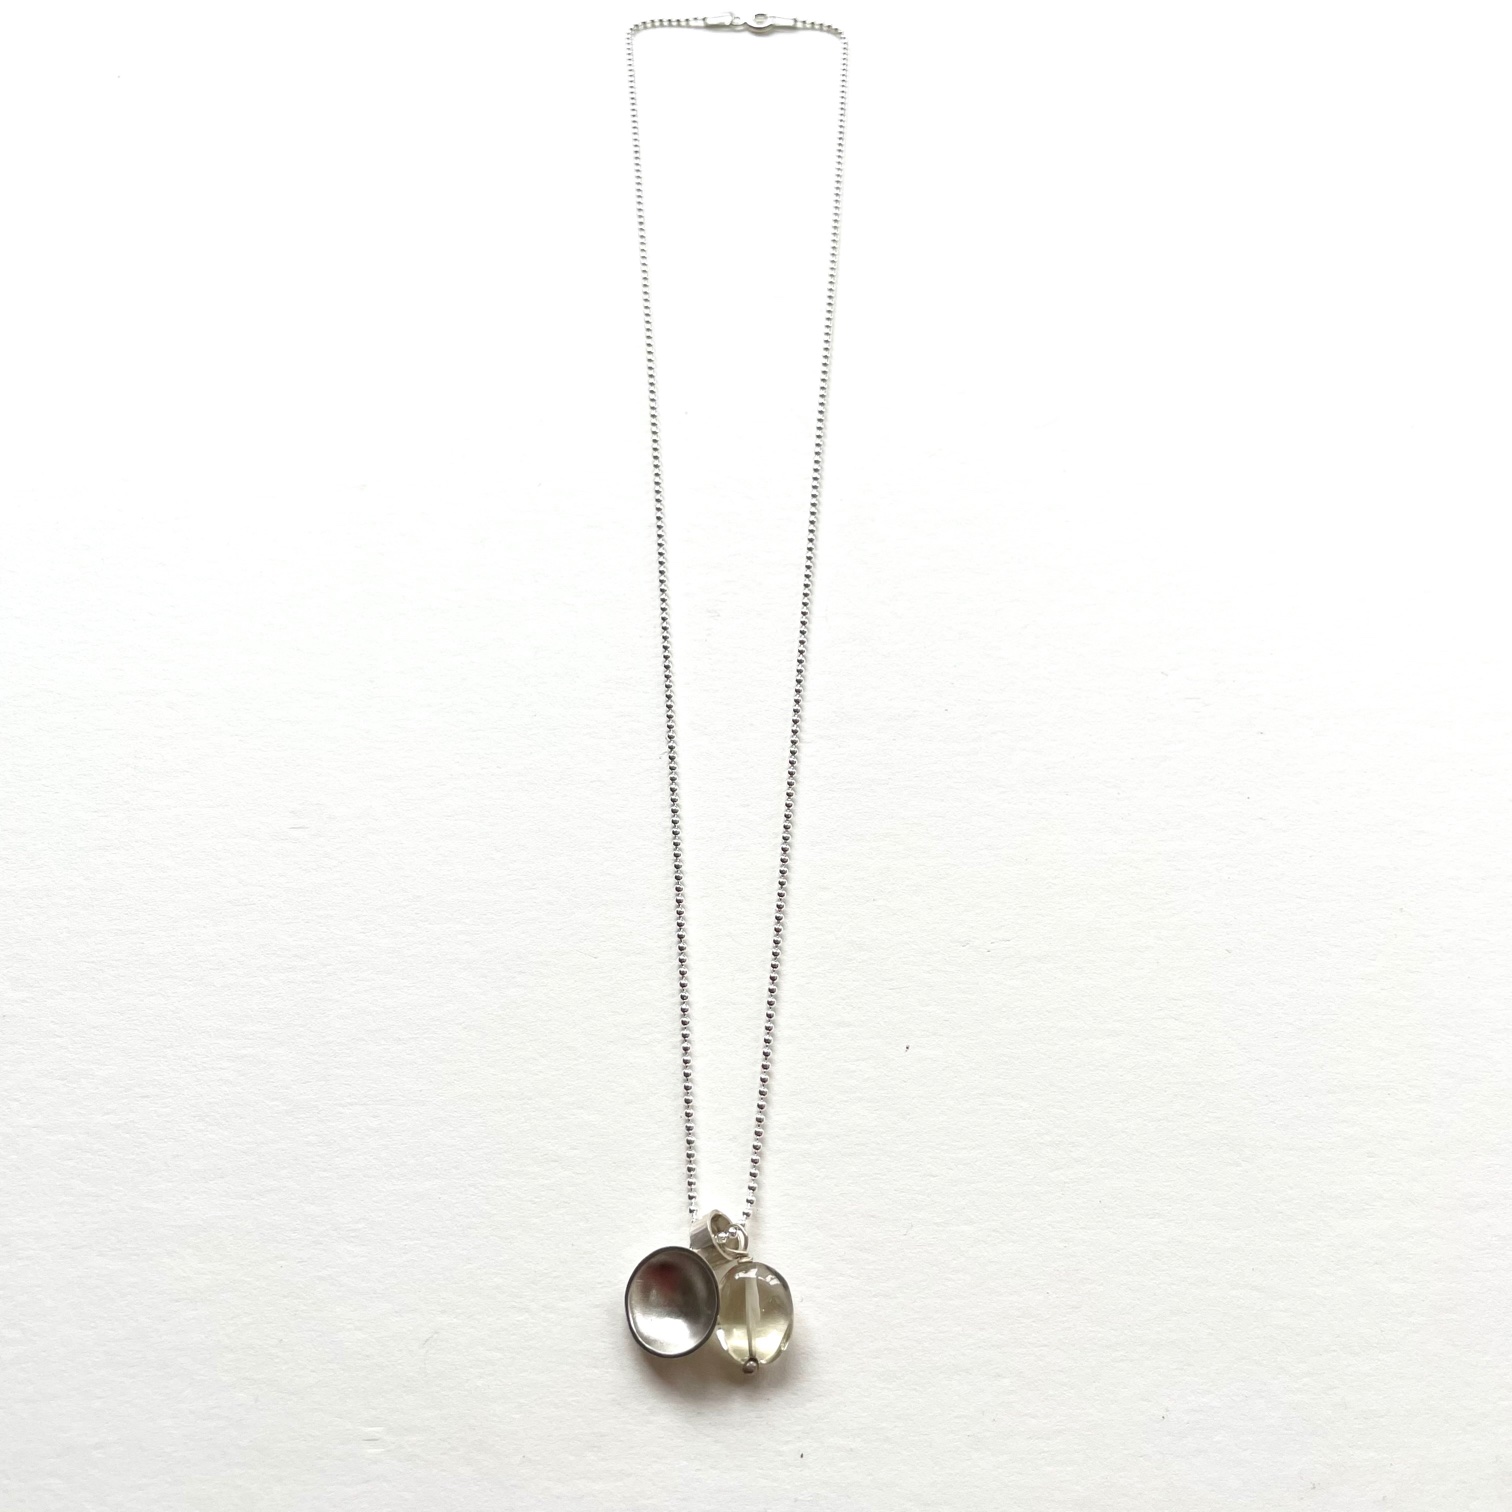 Silver and cloudy quartz pendant necklace by Karen Parker